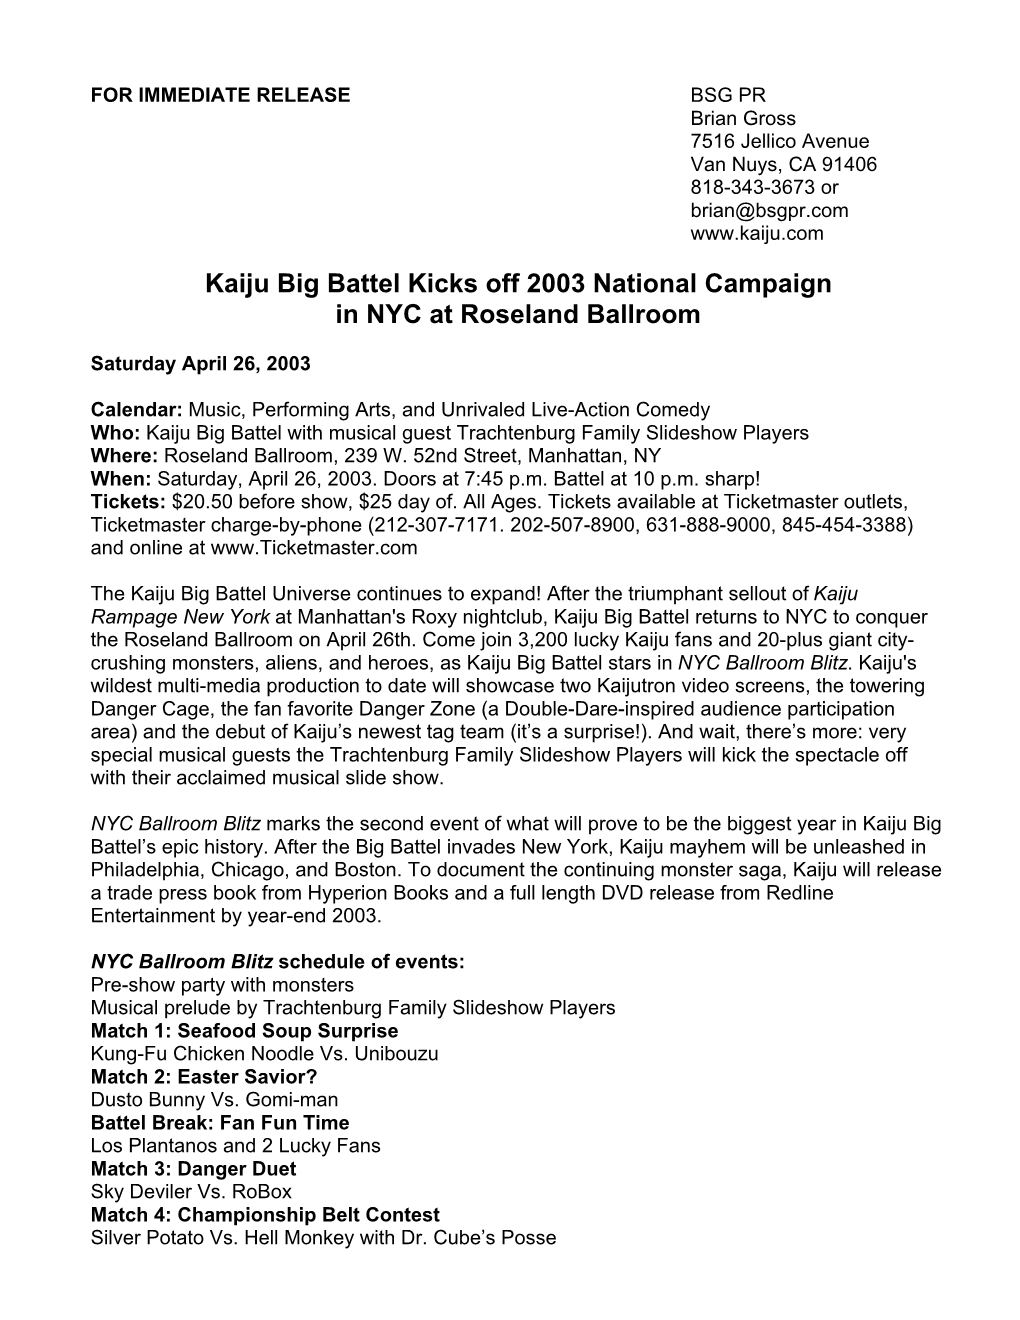 Kaiju Big Battel Kicks Off 2003 National Campaign in NYC at Roseland Ballroom